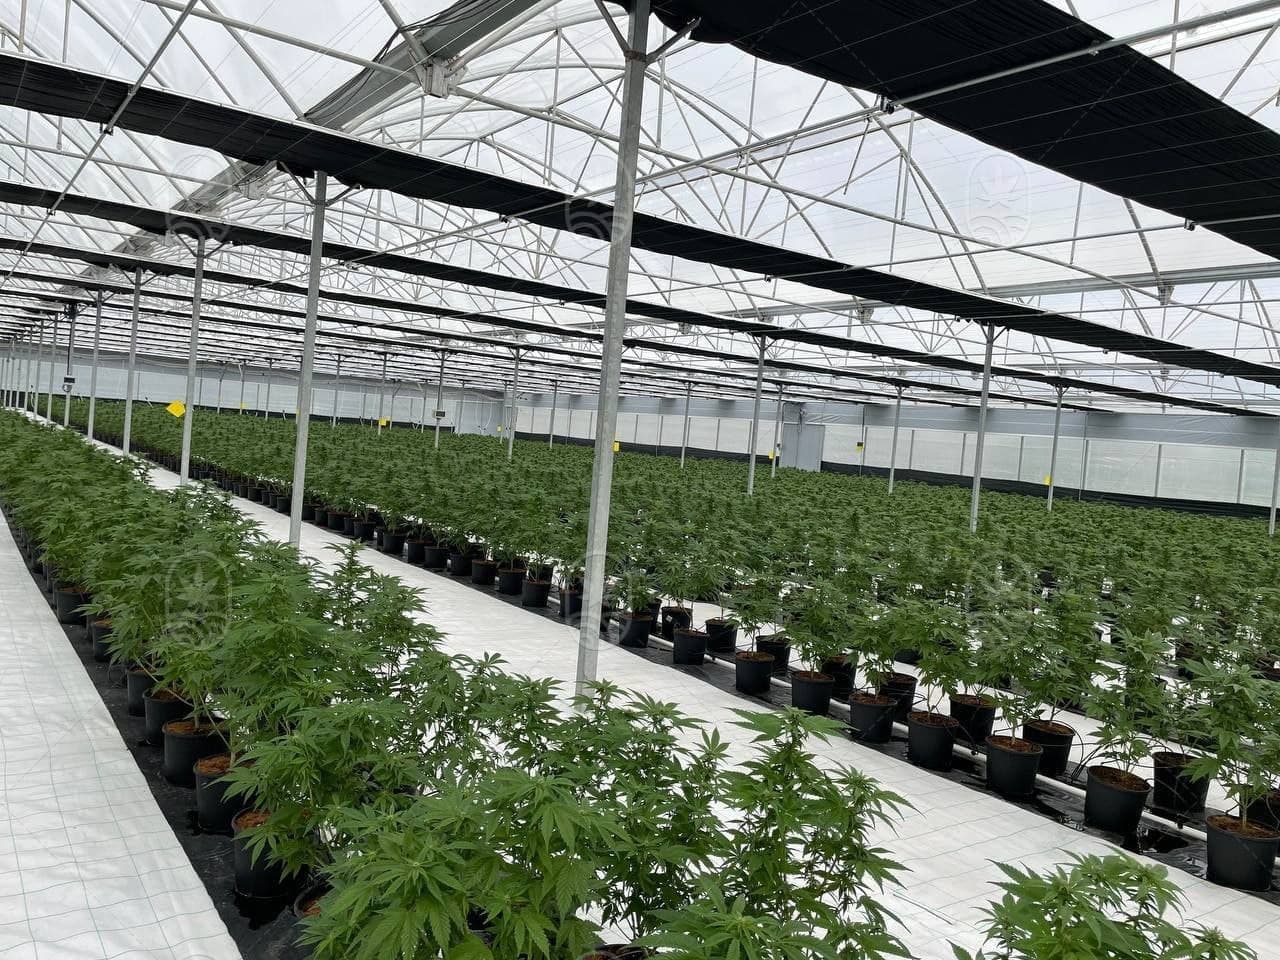 JuicyFields - Tu planta de cannabis también podría crecer aquí